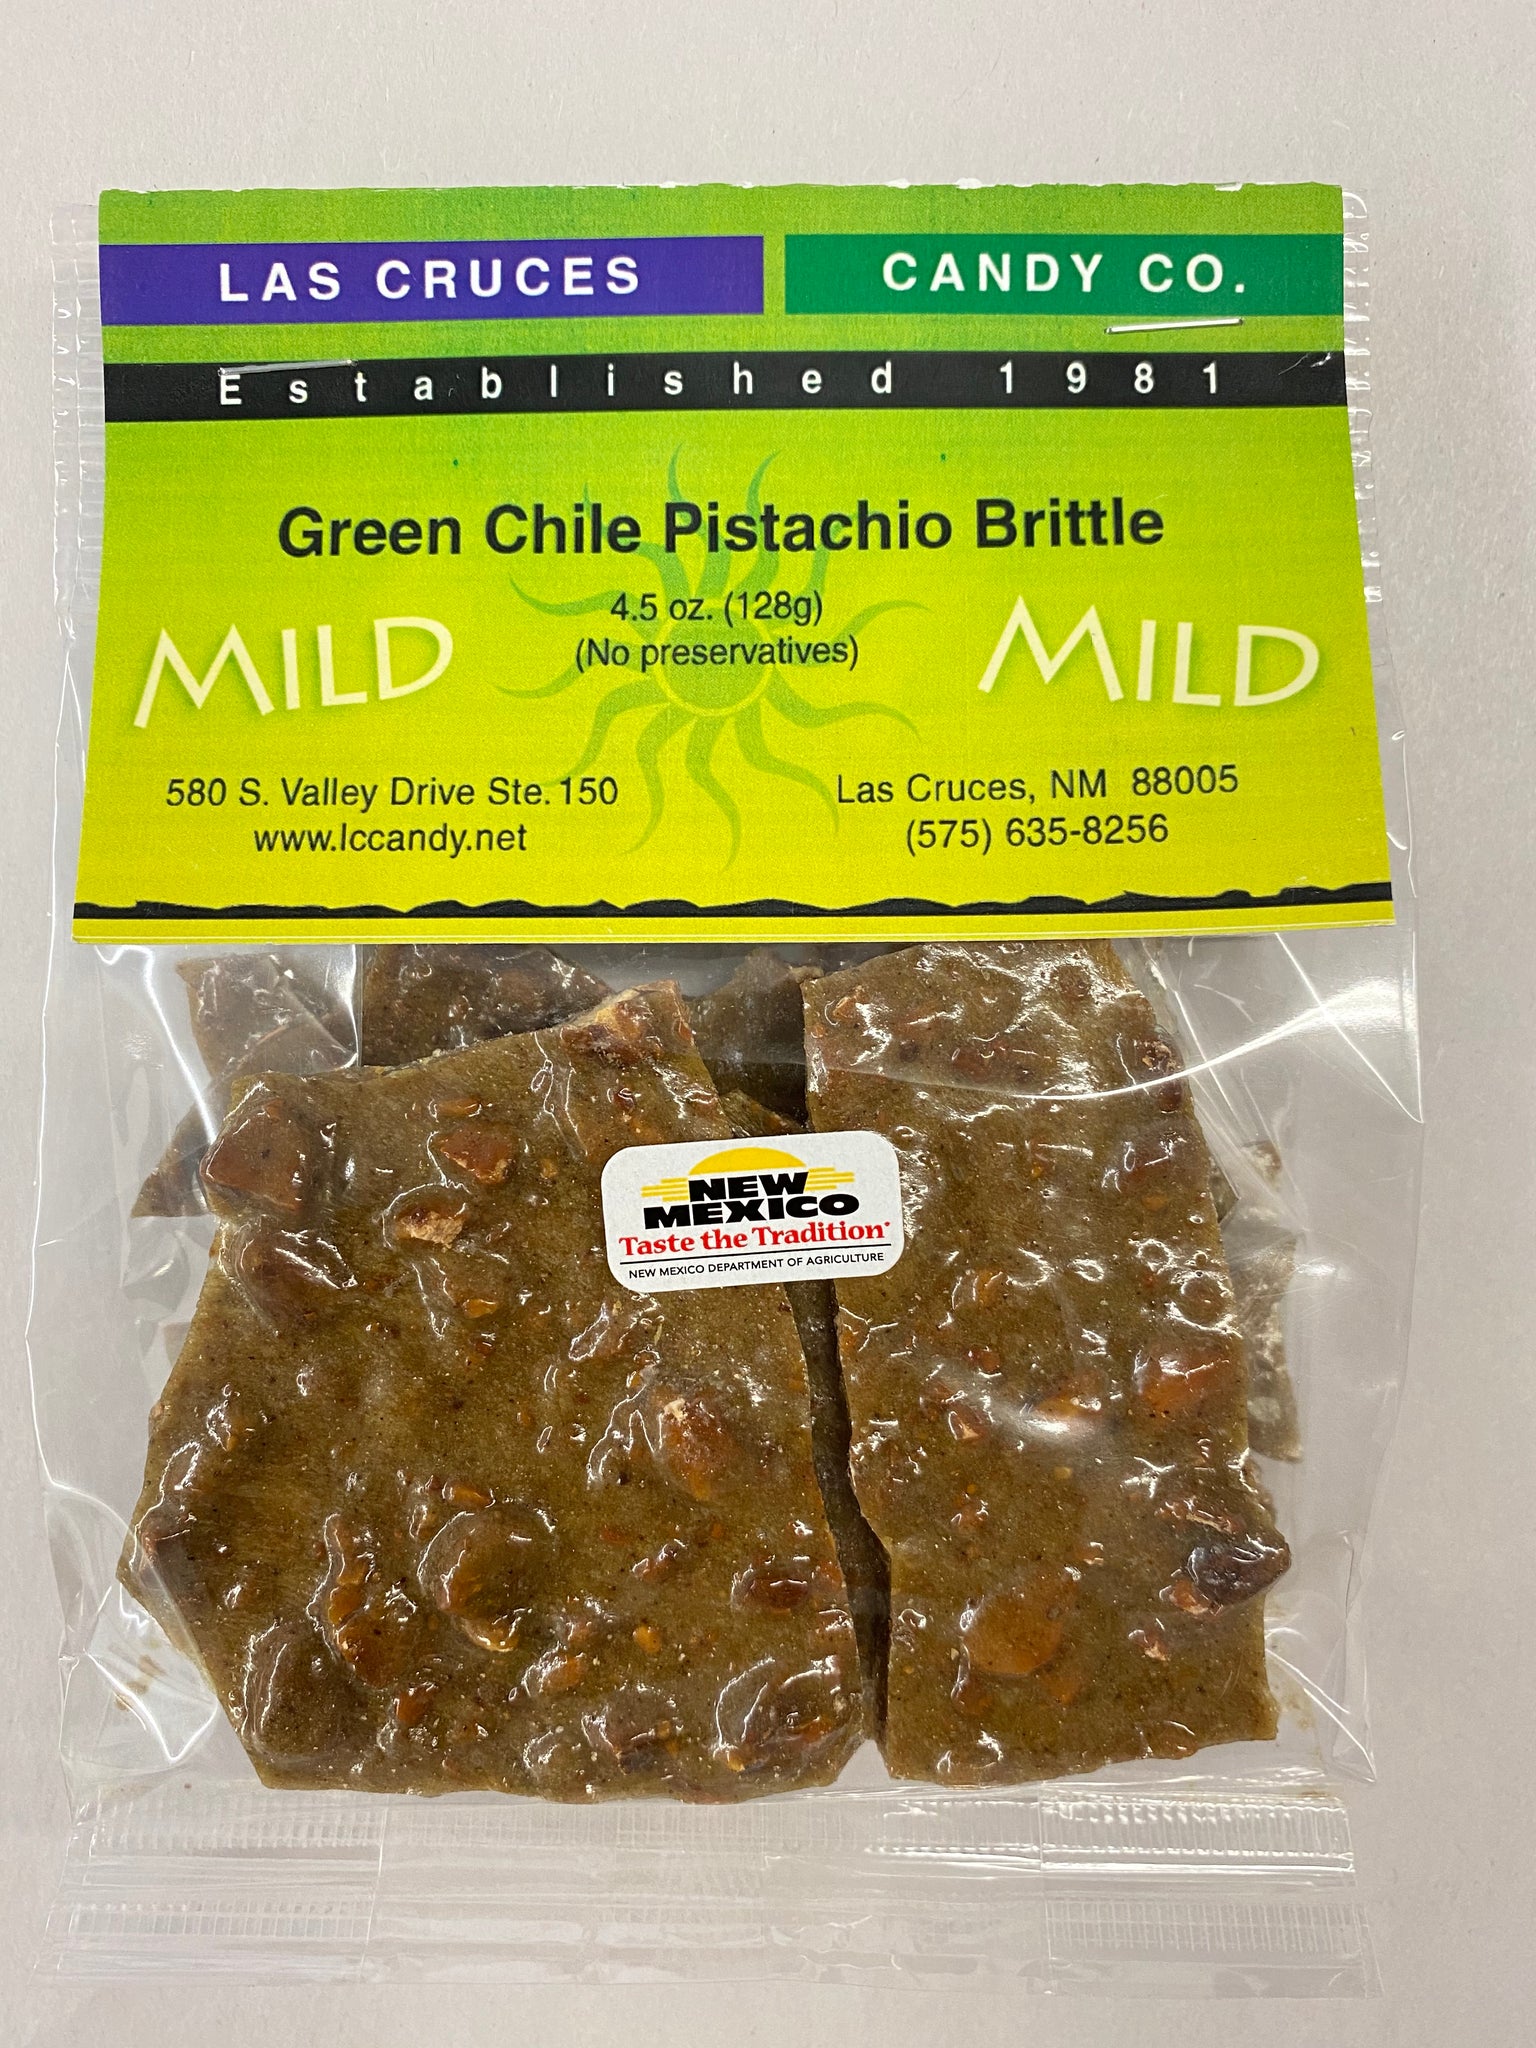 Green Chile Pistachio Brittle